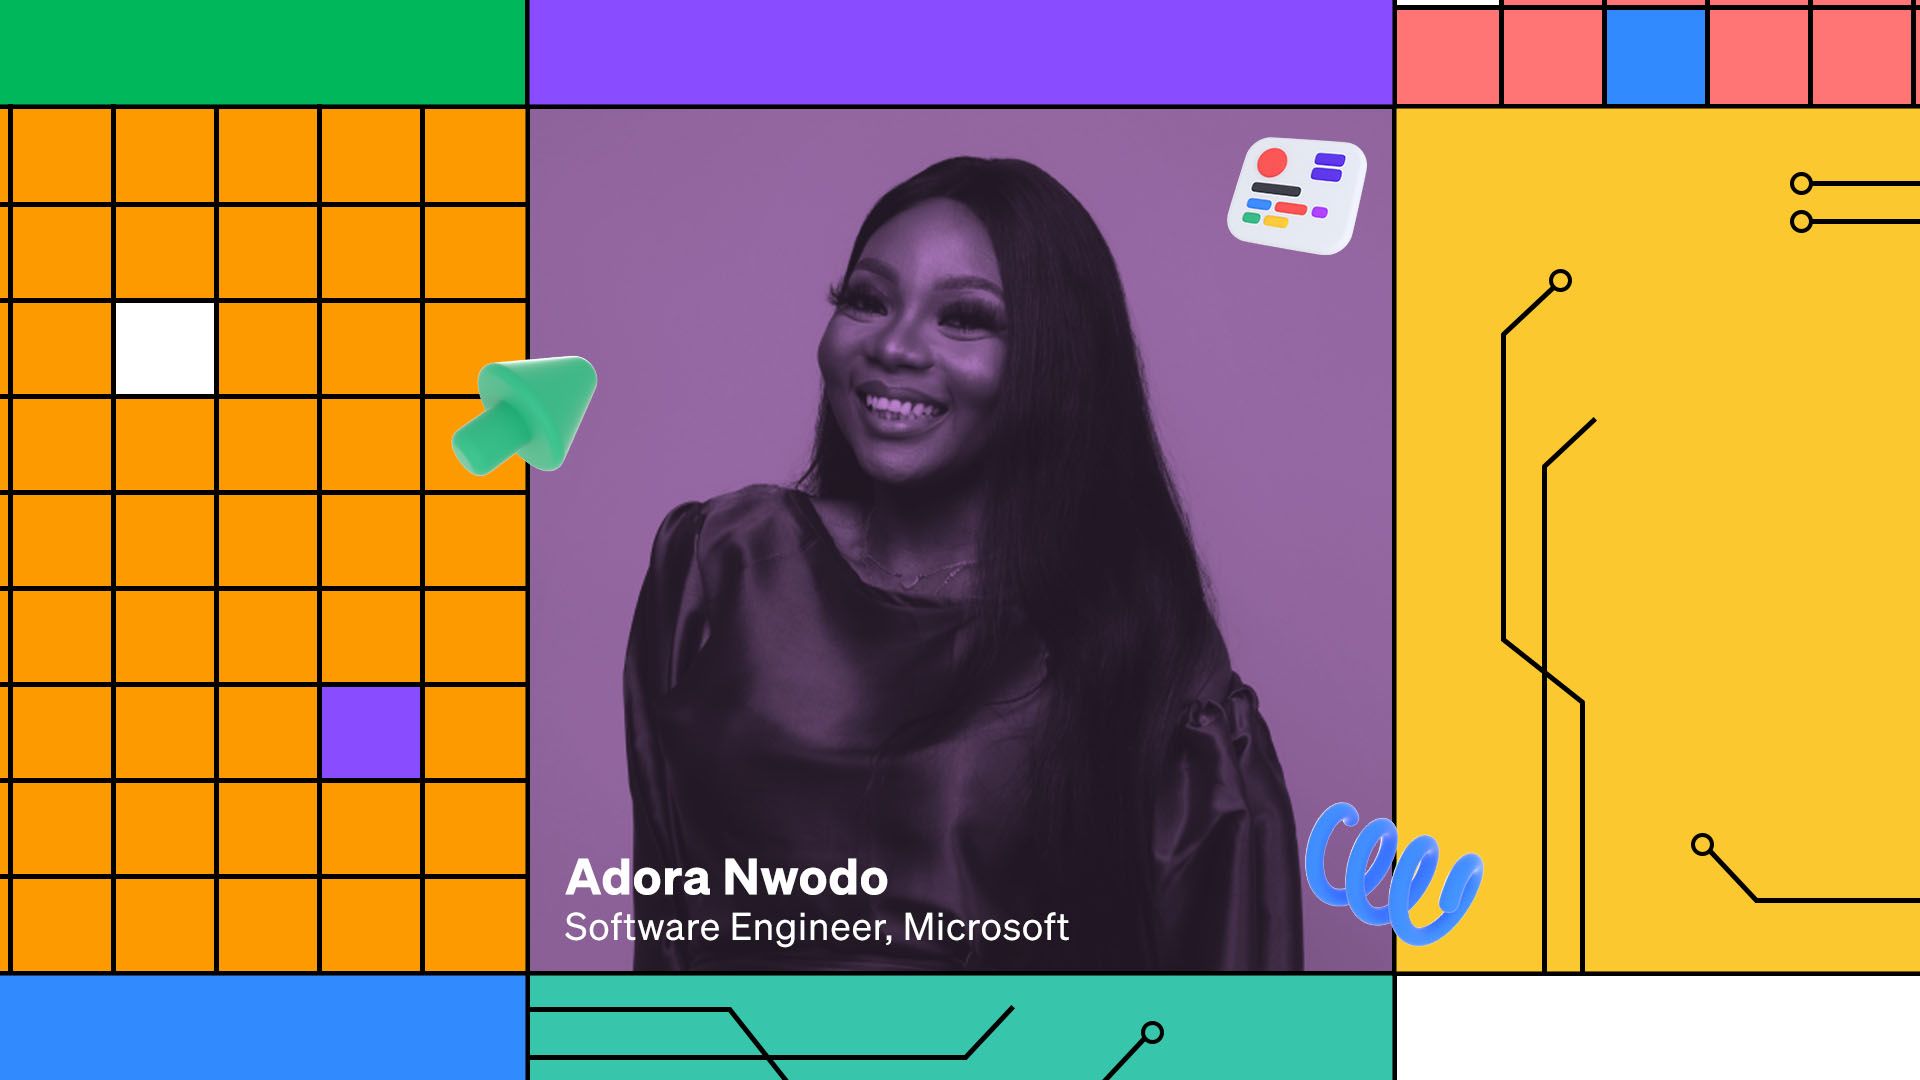 How I polywork: Software Engineer Adora Nwodo